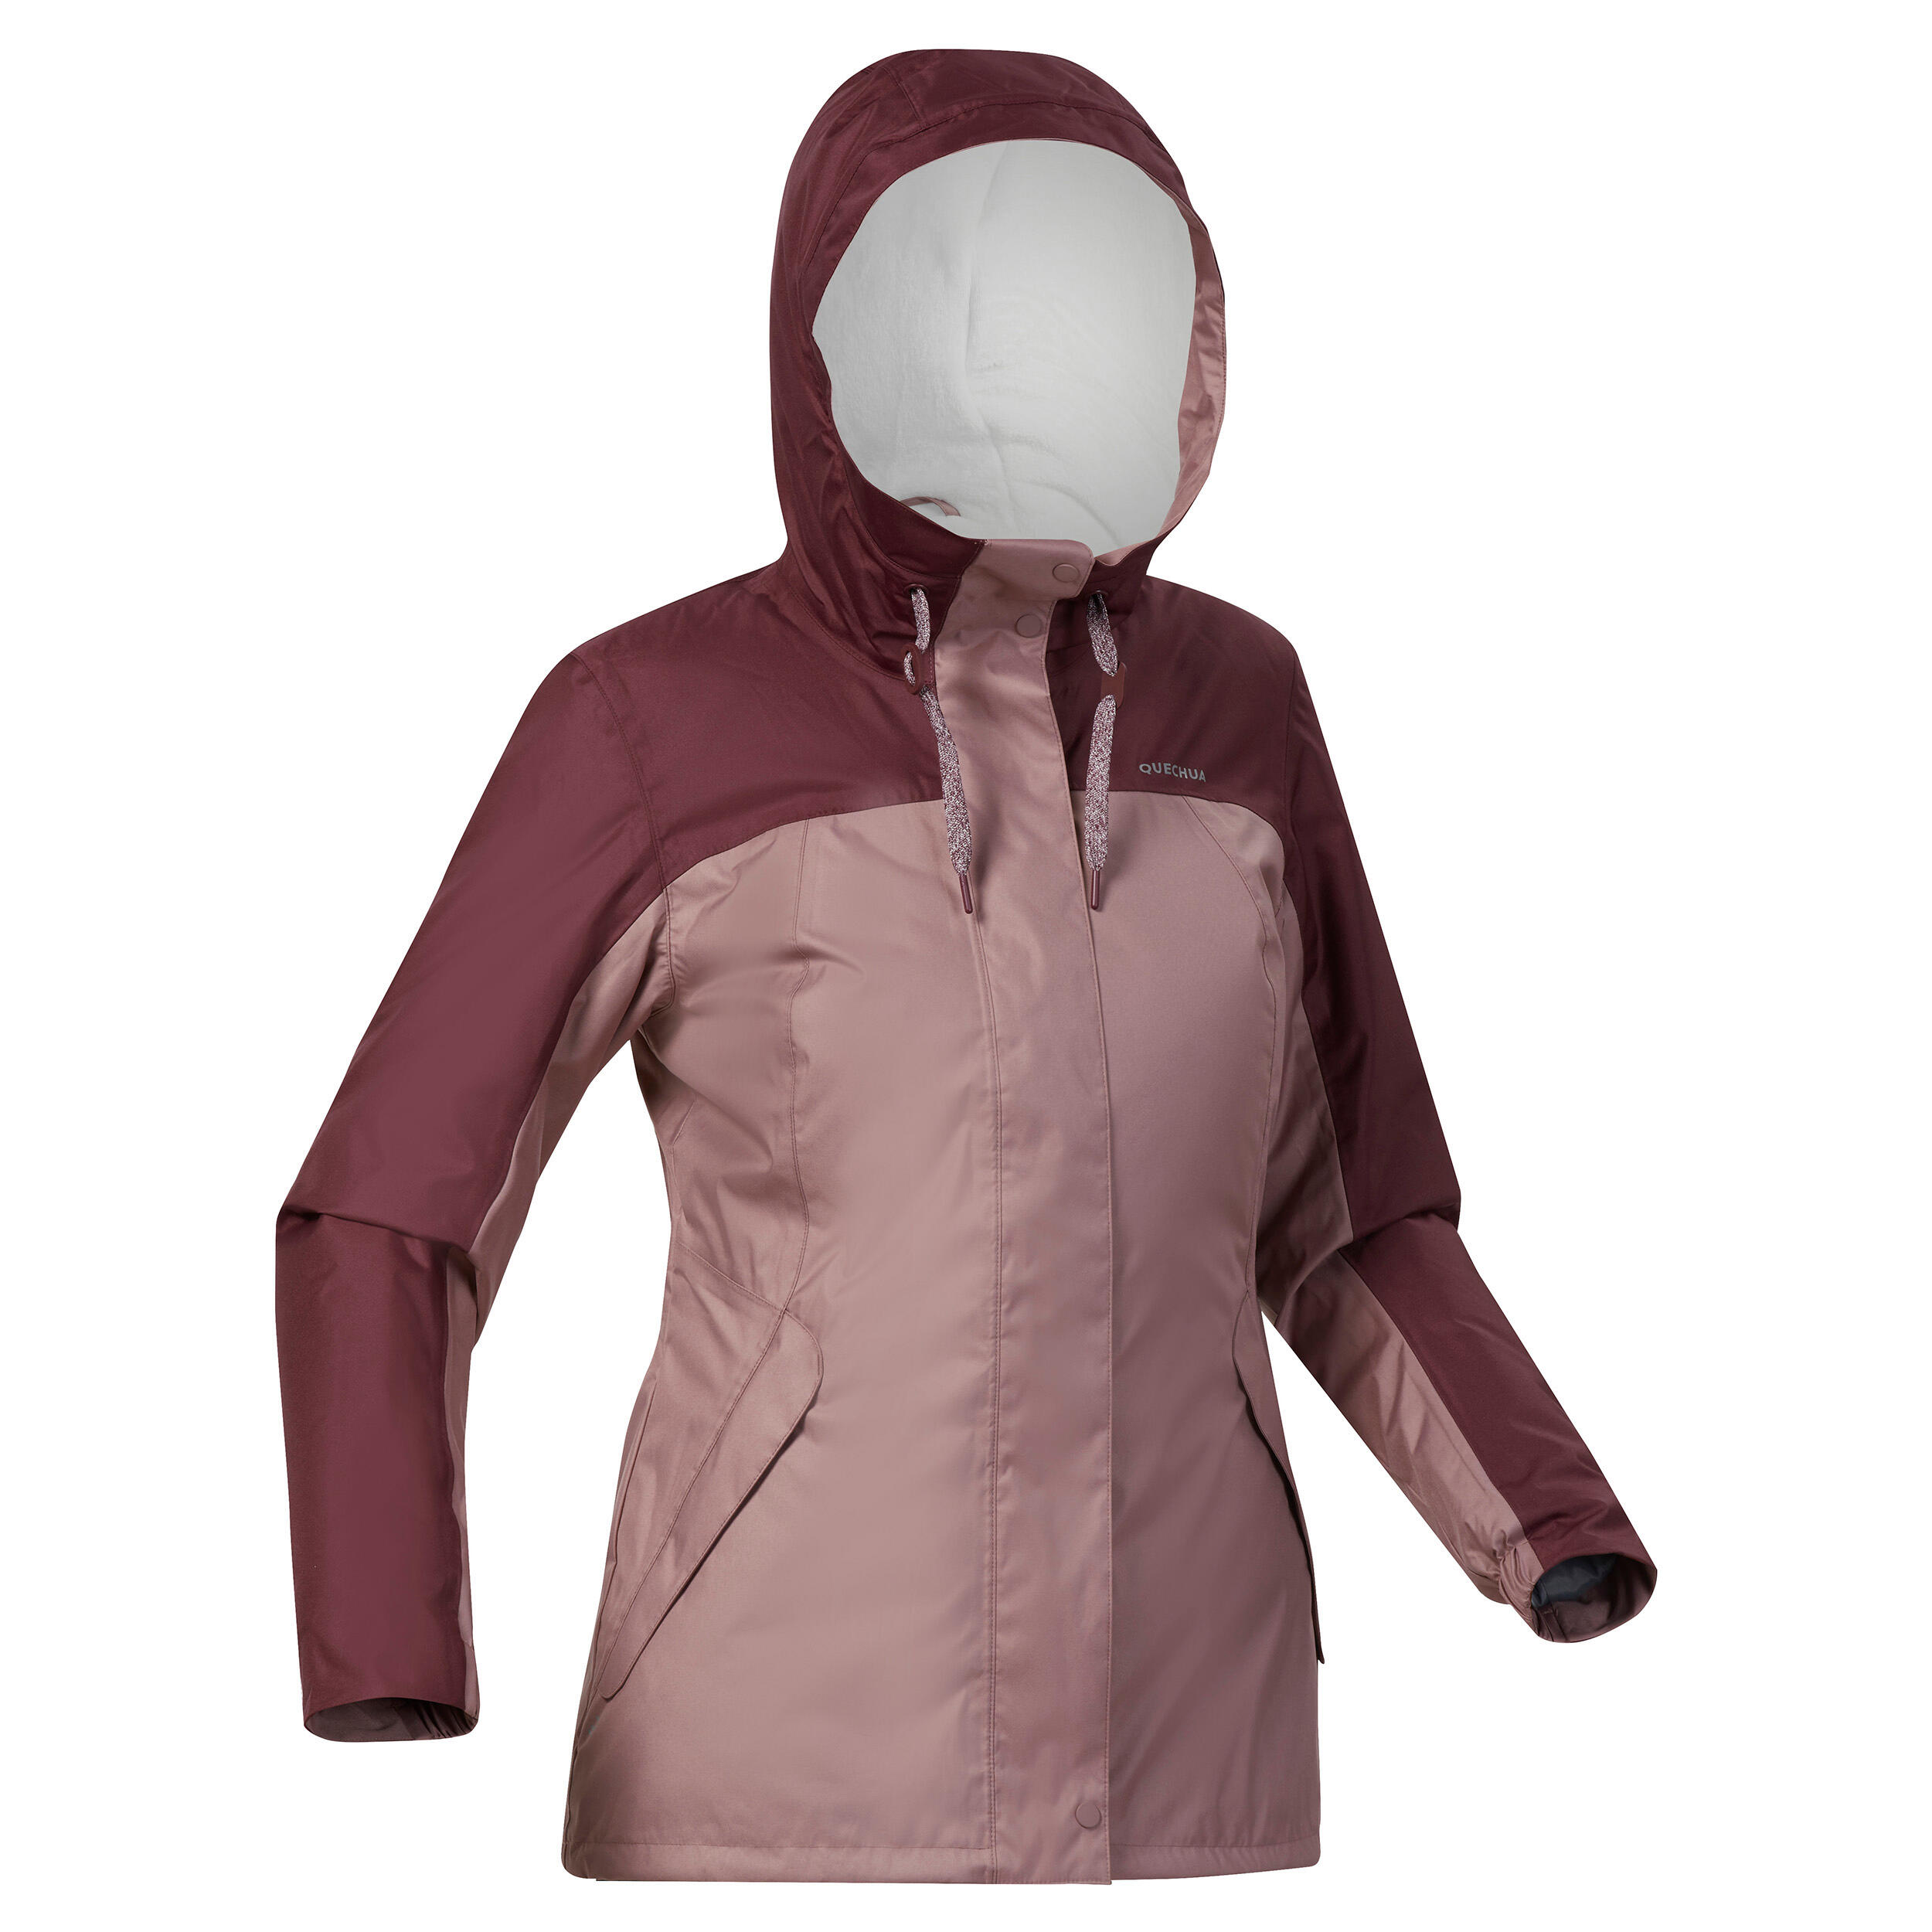 Women’s hiking waterproof winter jacket - SH500 -10°C 2/11